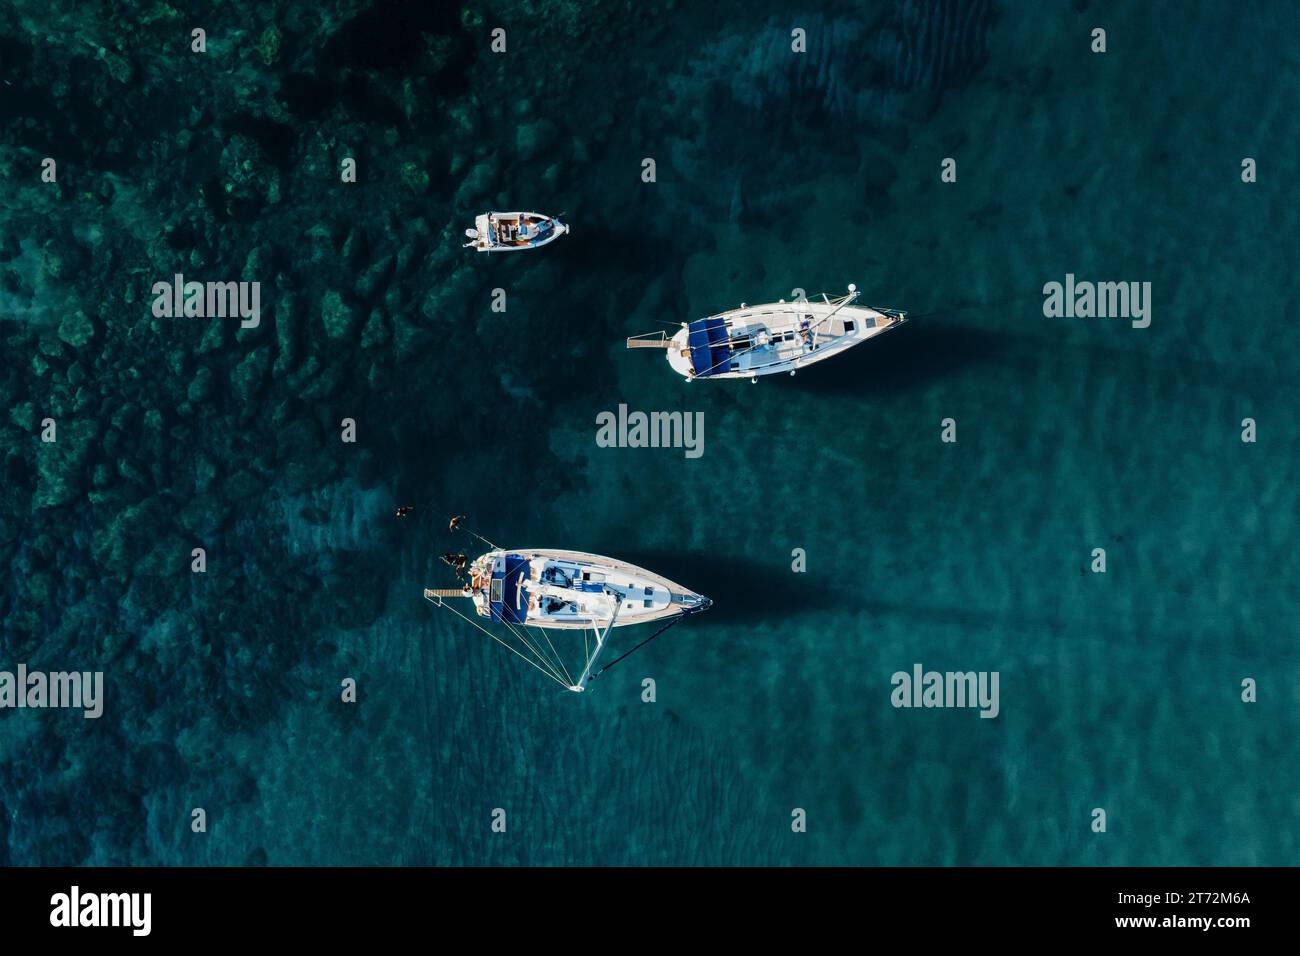 Segelyachten im blauen Meer, Blick von oben. Segelyacht auf dunklem Hintergrund, Luftsicht. Stockfoto